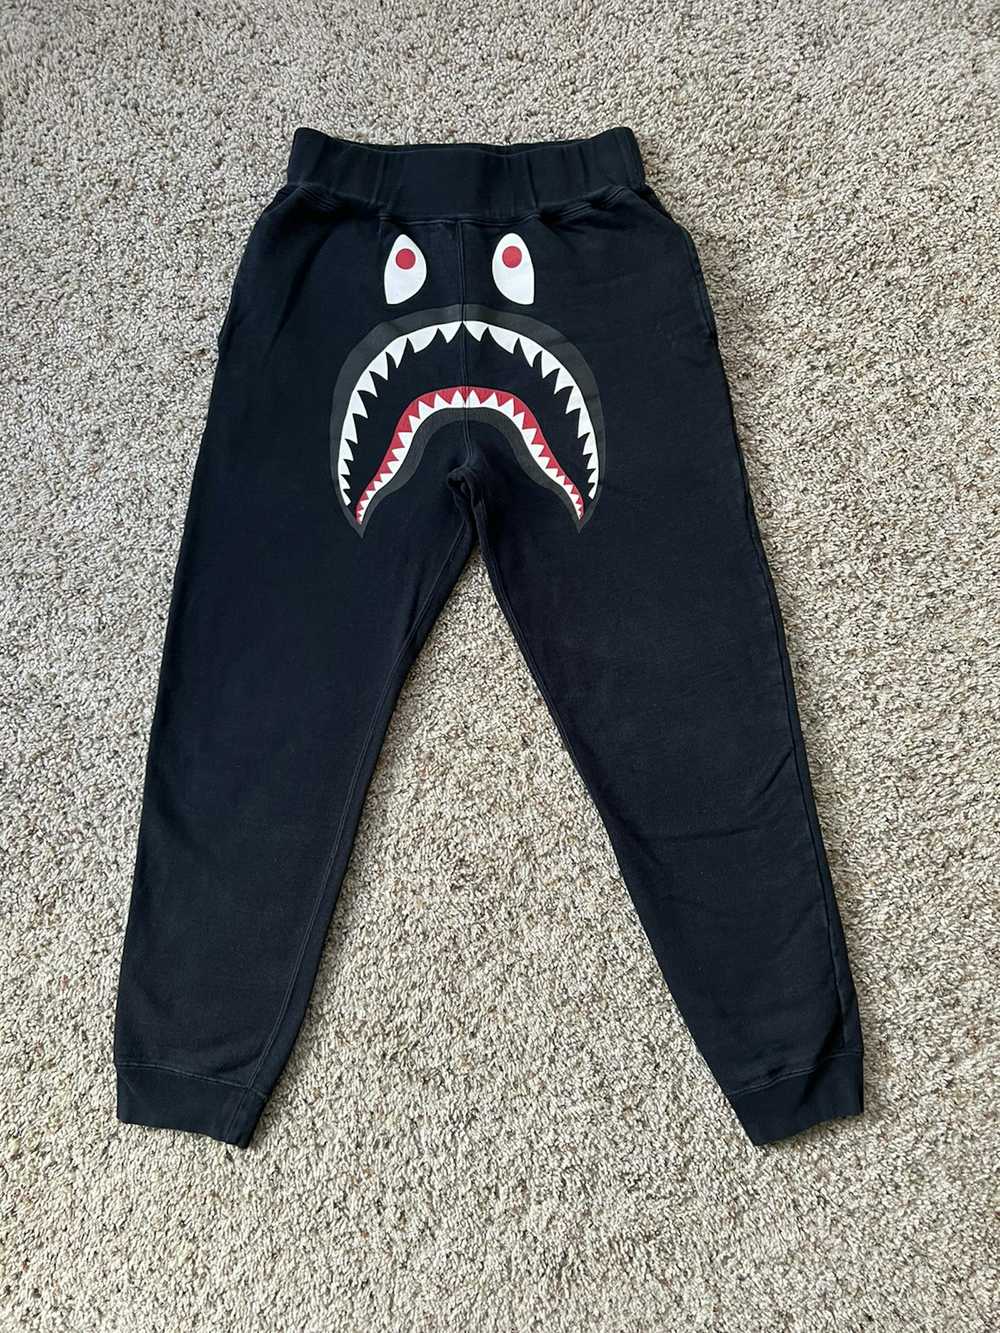 bape shark pants